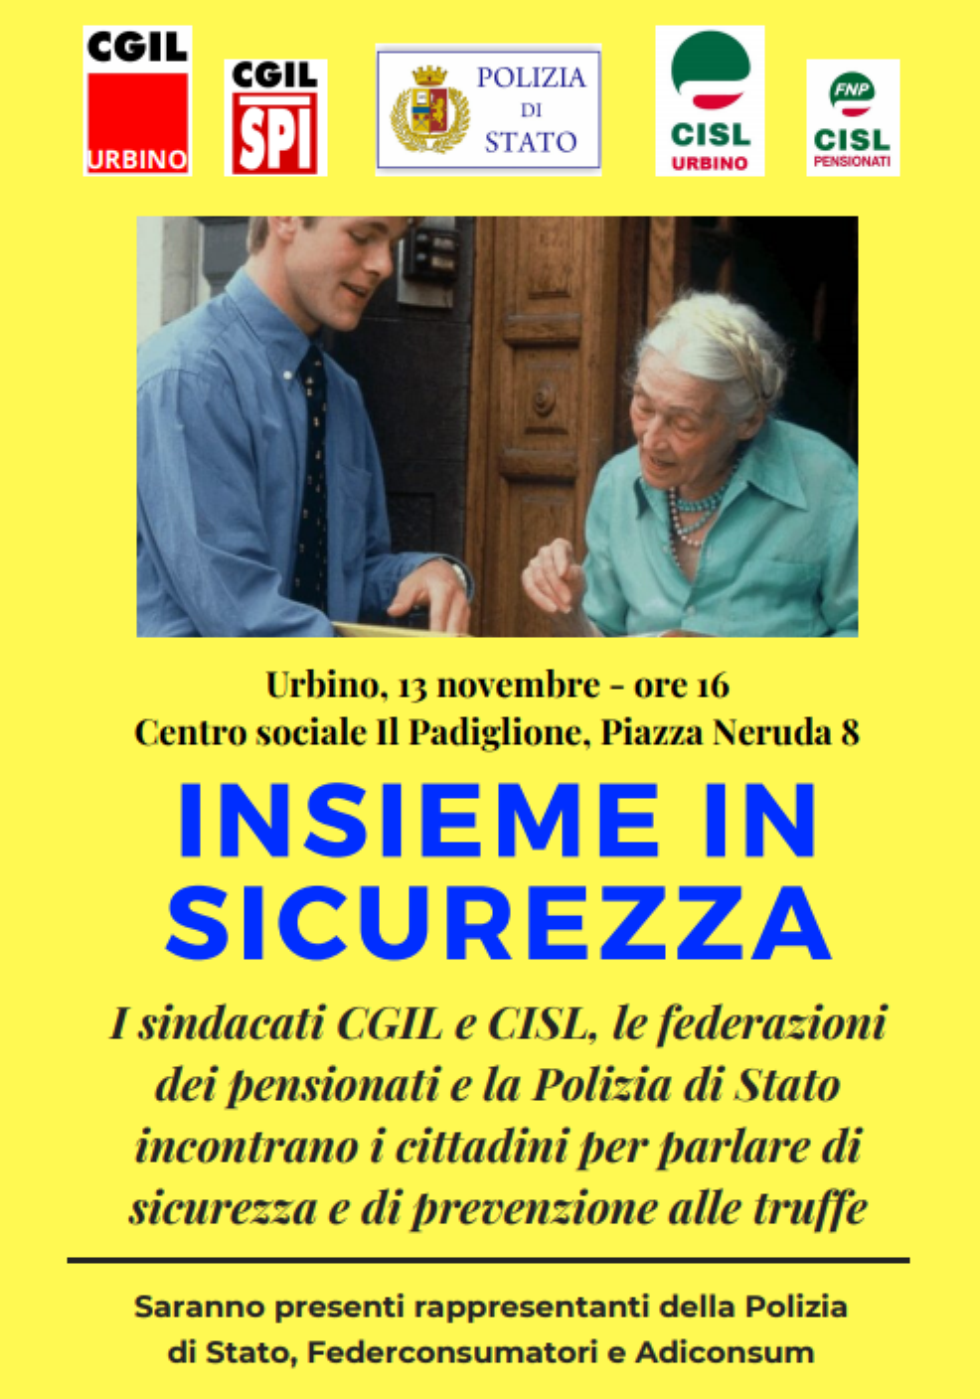 Insieme in sicurezza: Cgil e Cisl di Urbino inaugurano una serie di incontri per parlare di truffe agli anziani e ai cittadini